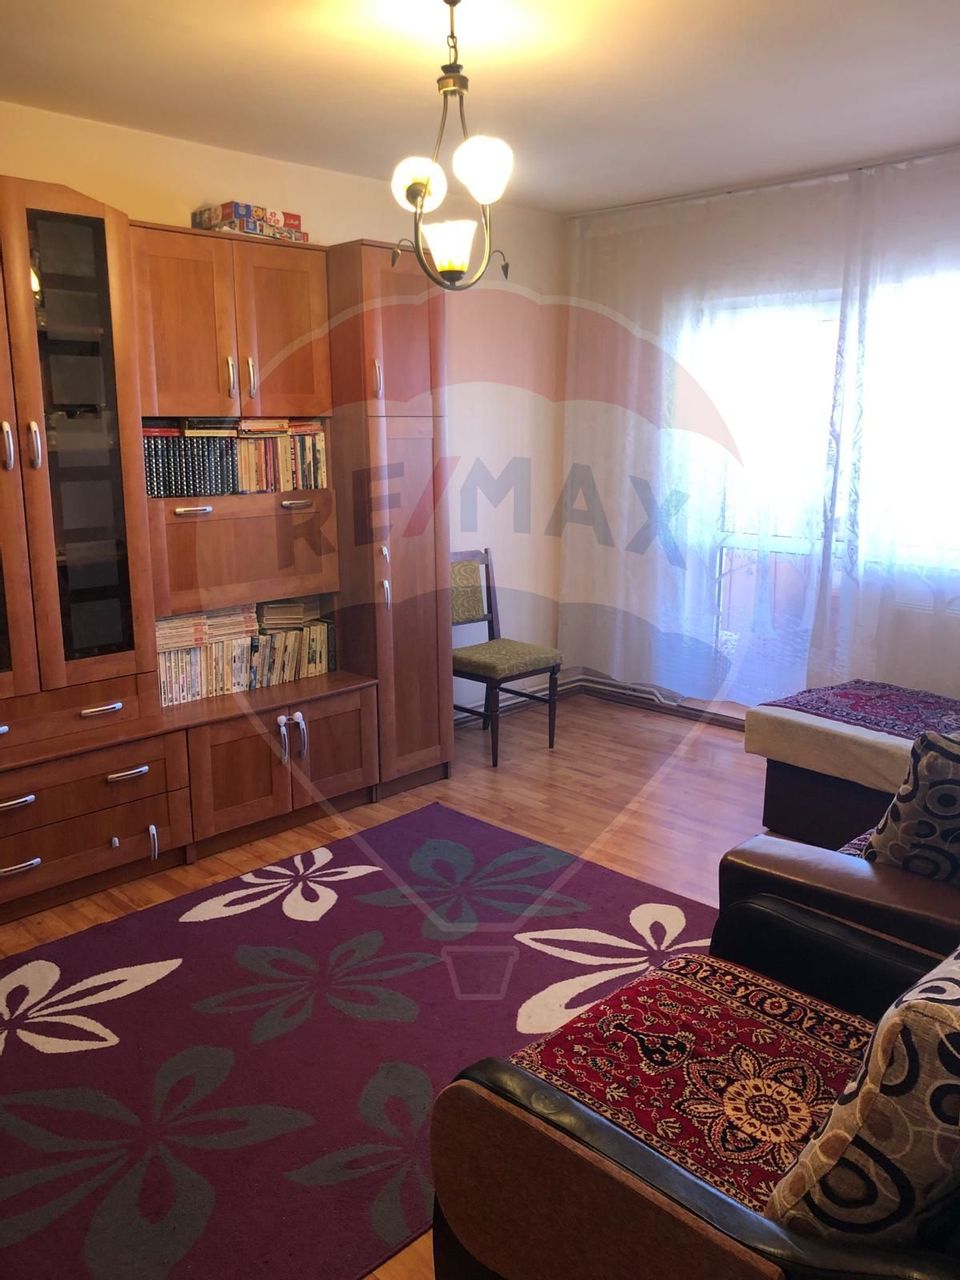 Apartament cu 3 camere de vânzare în zona Marasti